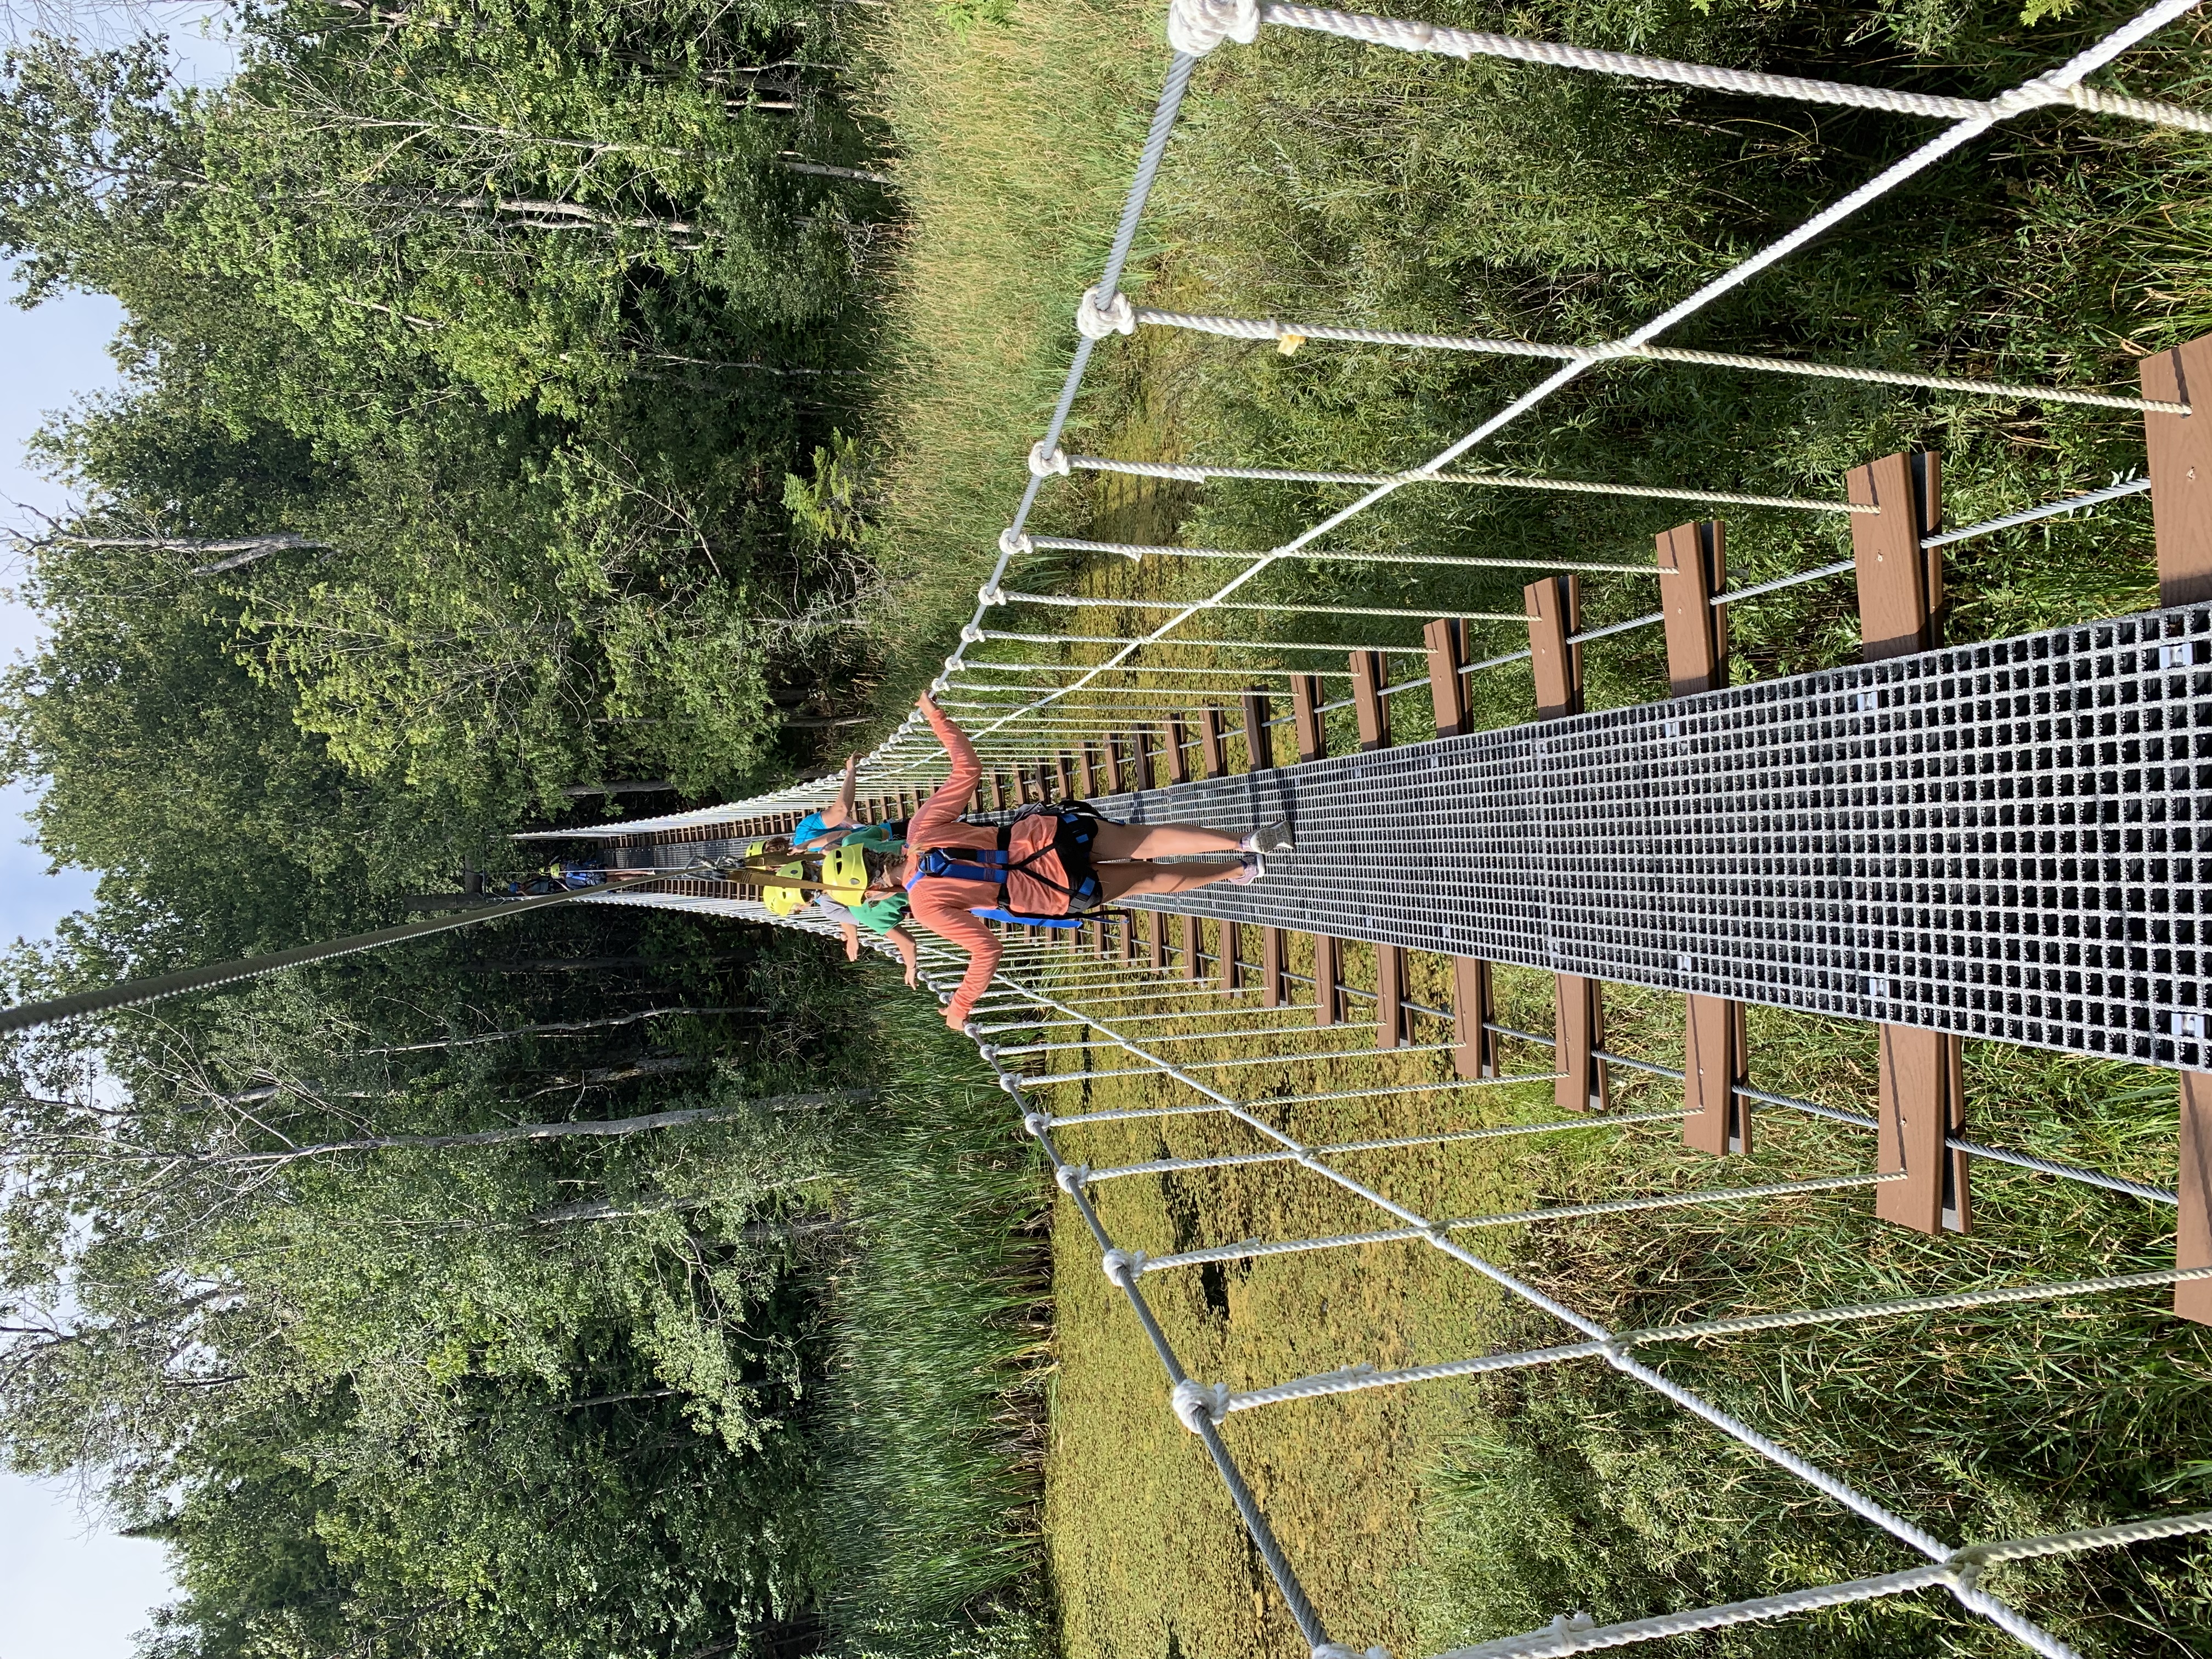 crossing suspension bridge in door county forests